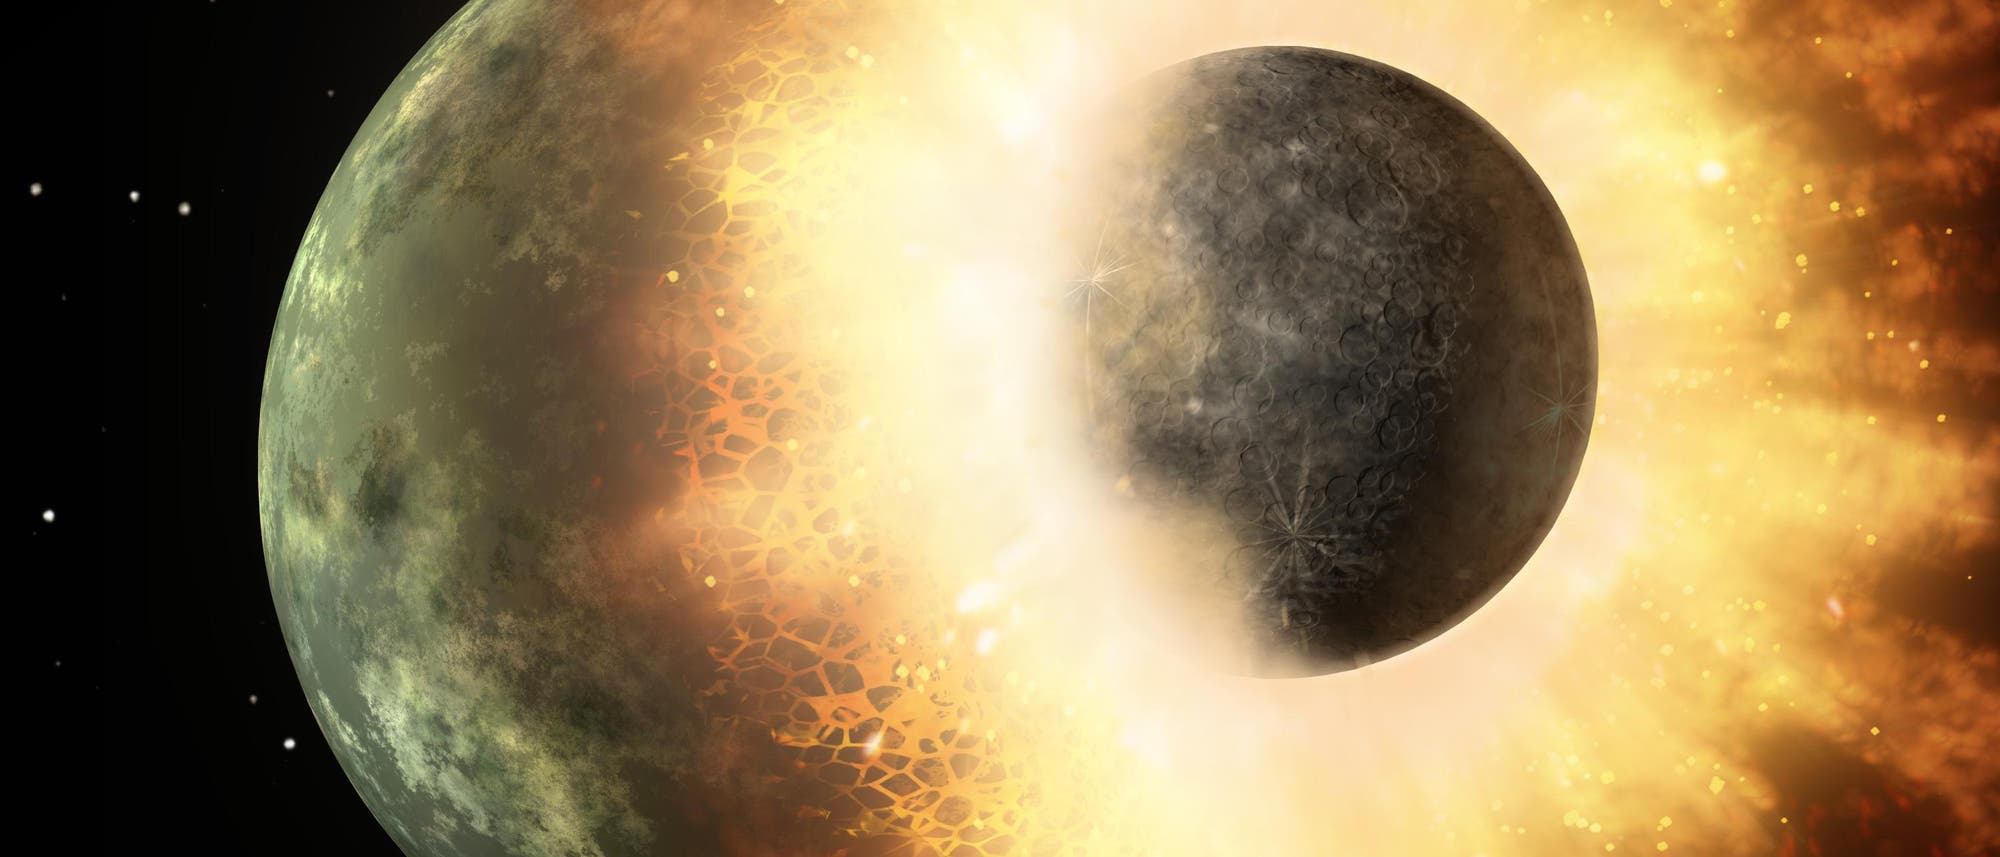 Die Entstehung des Mondes durch den "Giant Impact" (künstlerische Darstellung)